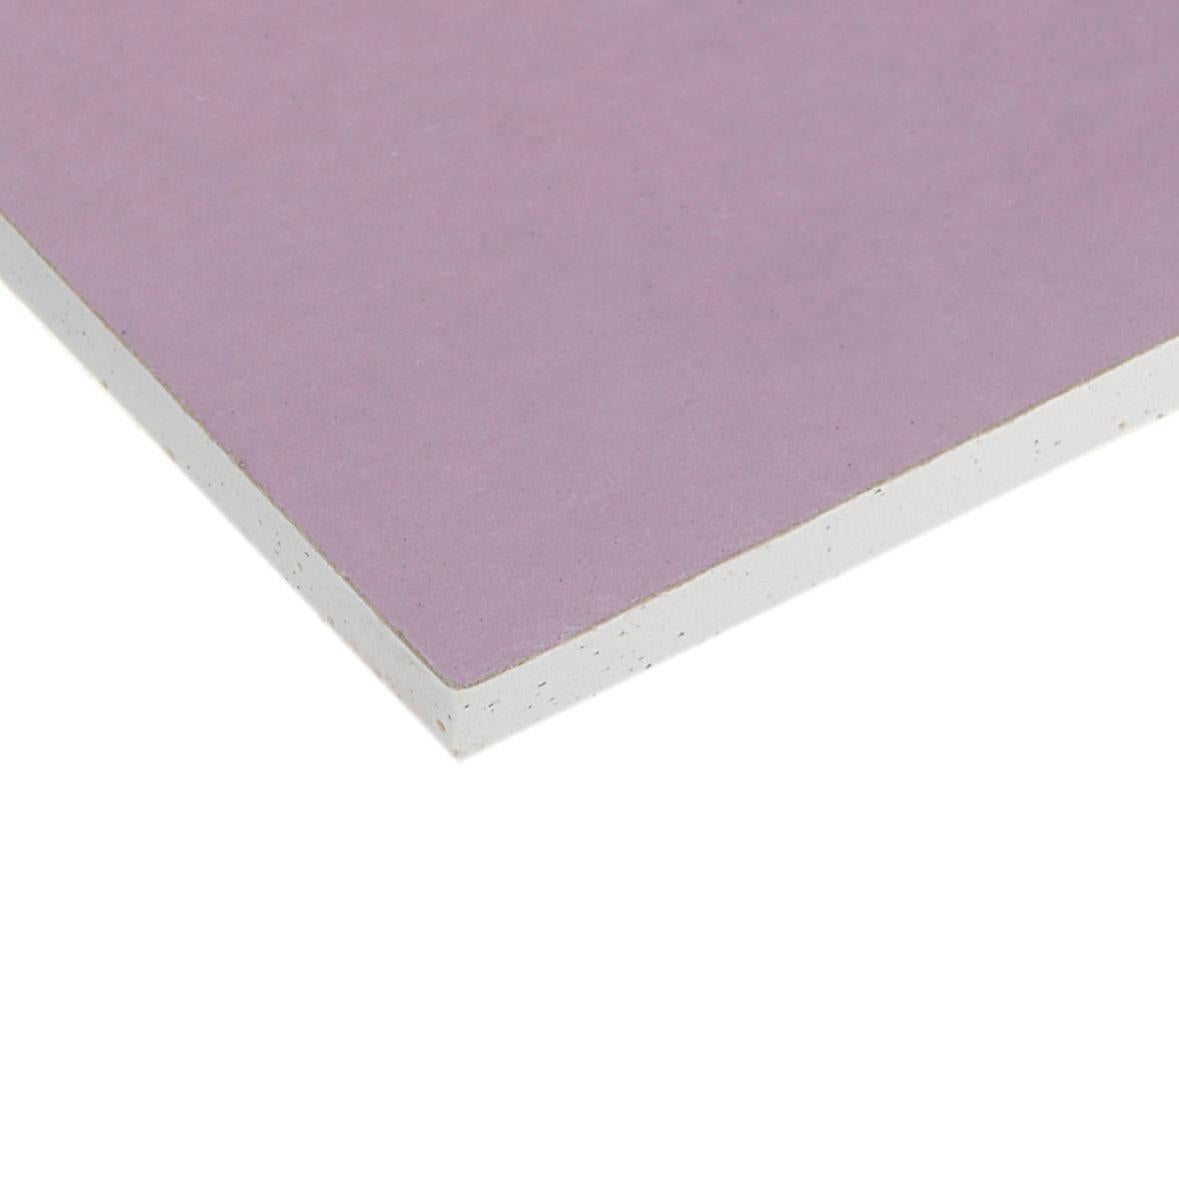 Râpe pour plaques de plâtre, rabot en fibre de bois violet, coupe